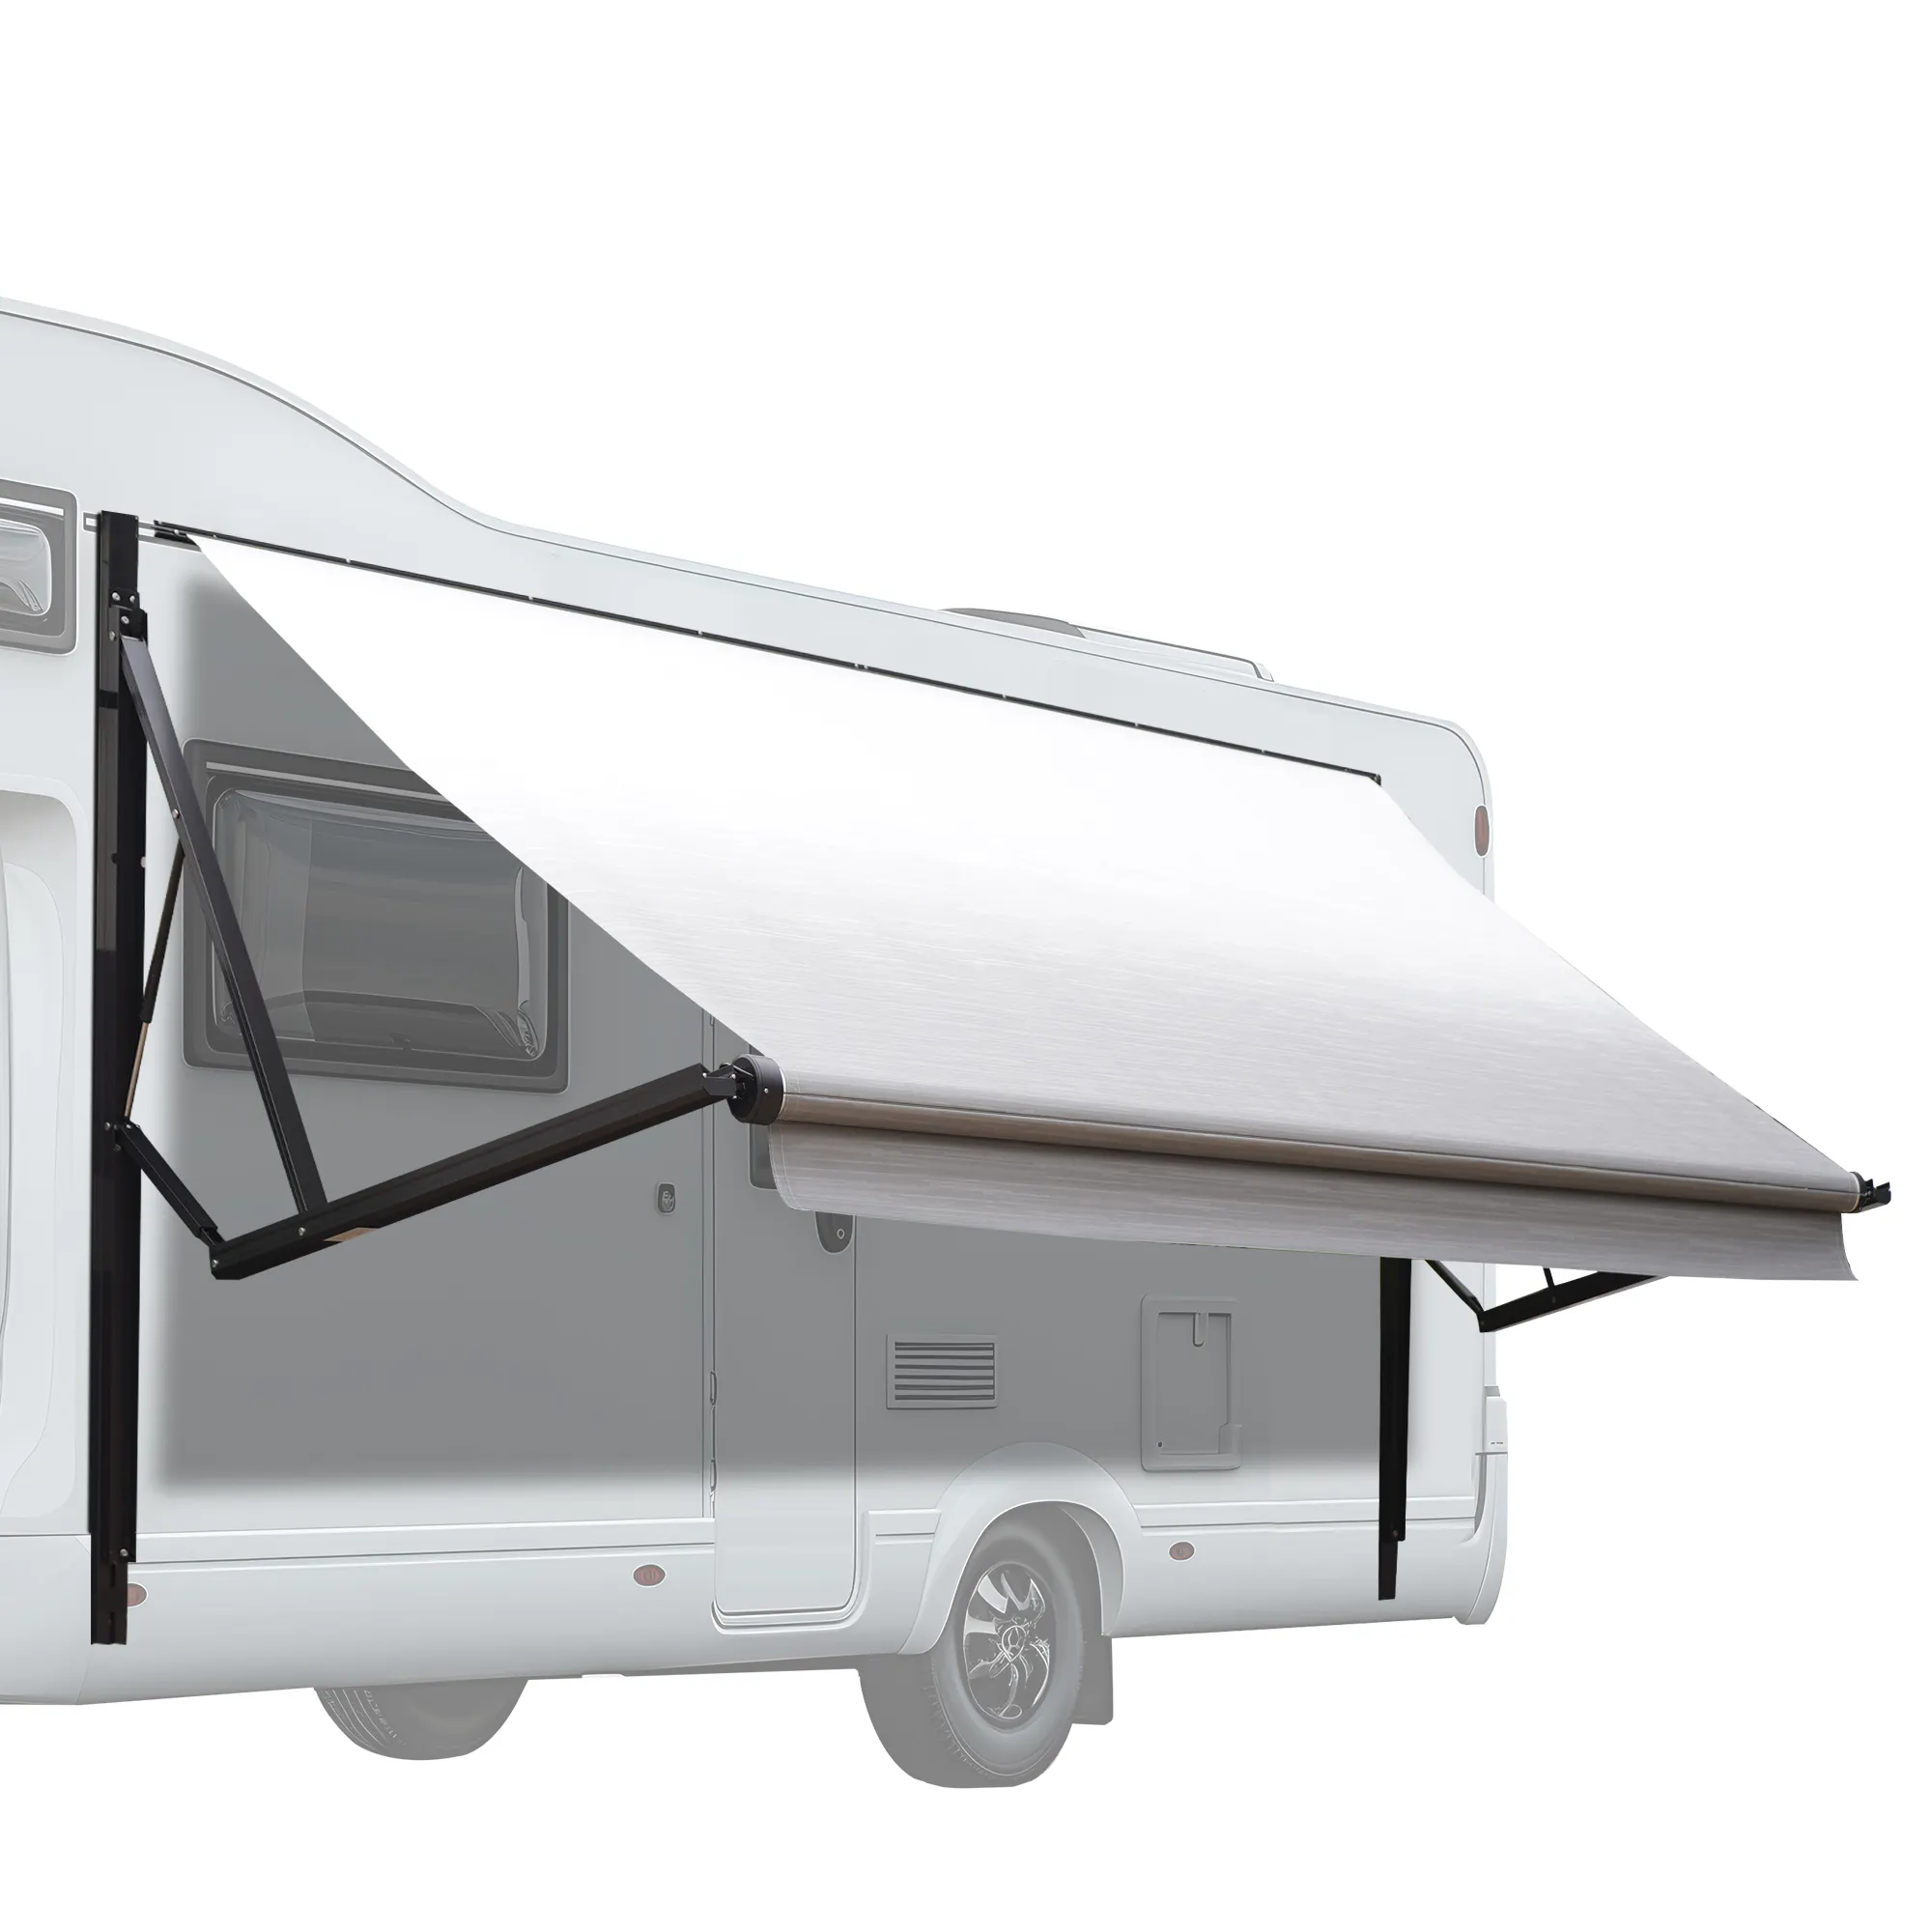 Awnlux tenda da sole per camper a 5 ruote con rimorchio retrattile modulare motorizzato bianco con tessuto blu oceano